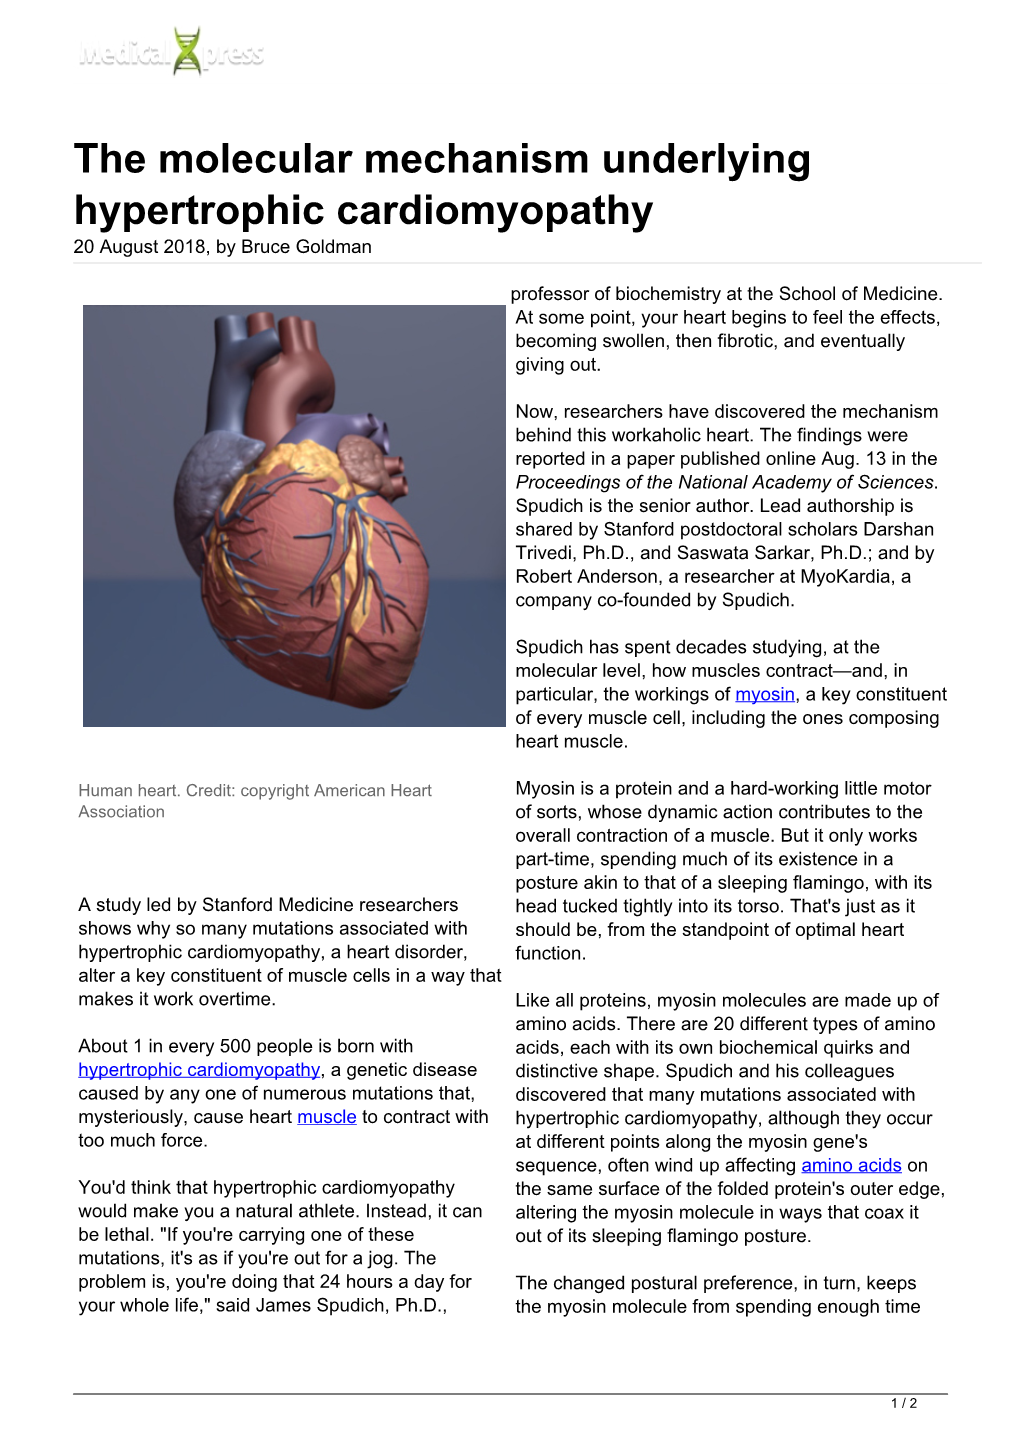 The Molecular Mechanism Underlying Hypertrophic Cardiomyopathy 20 August 2018, by Bruce Goldman